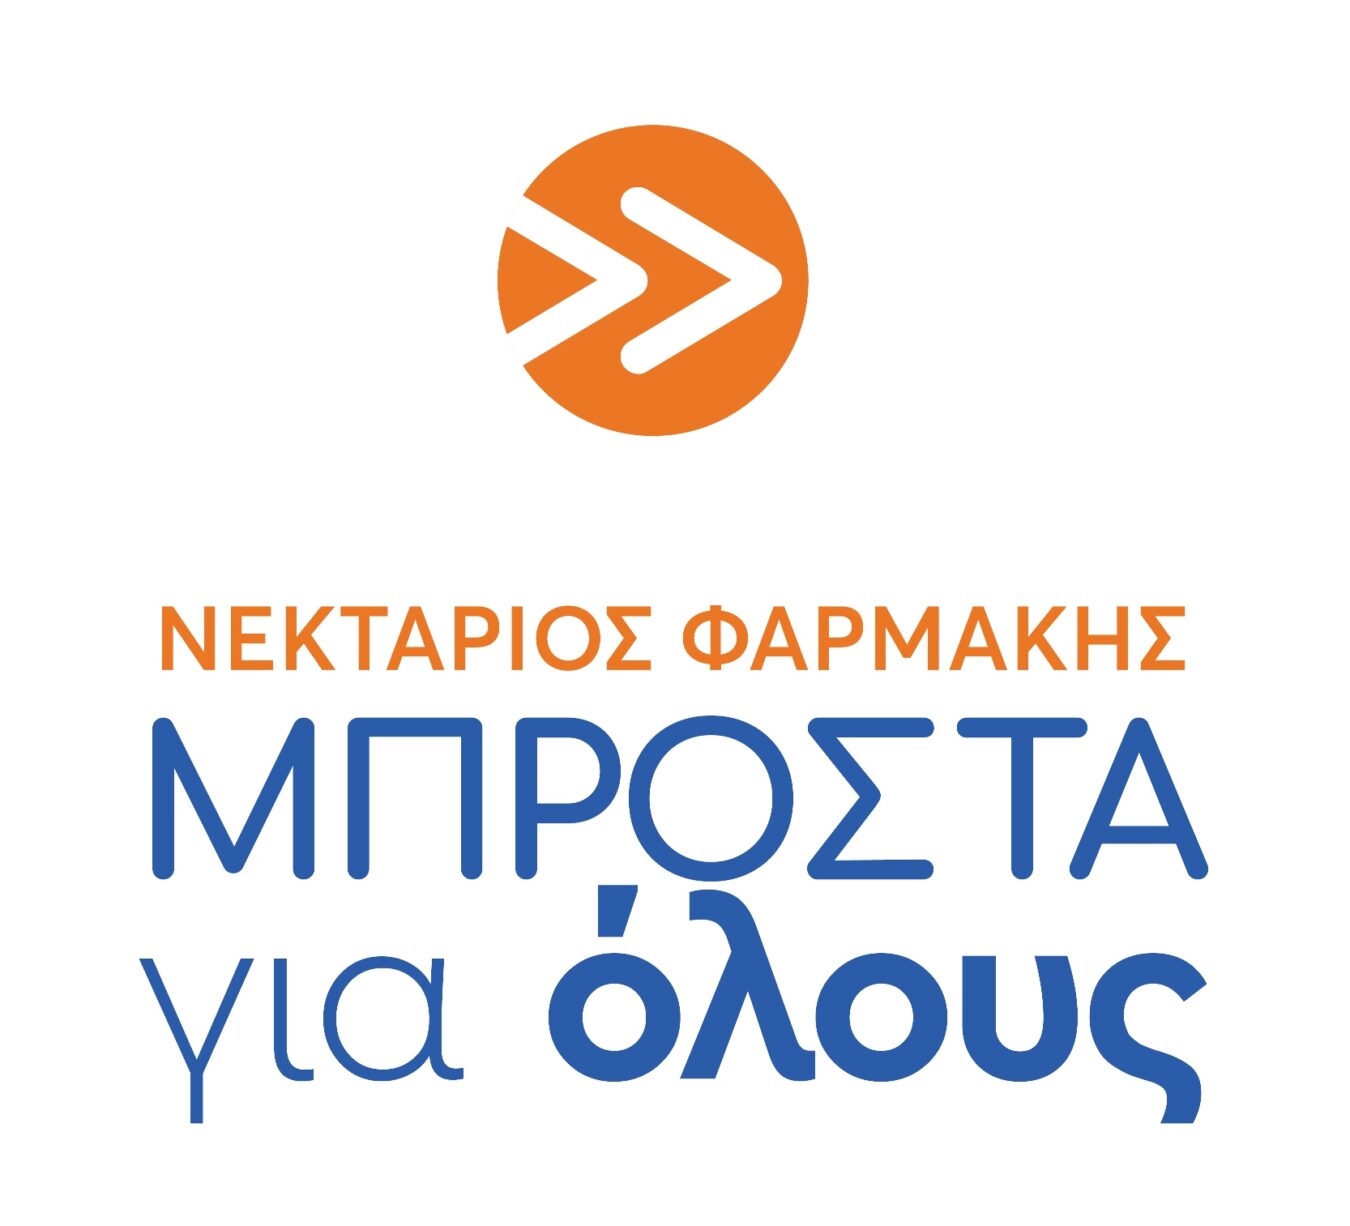 ΜΠΡΟΣΤΑ για όλους (Φαρμάκης Νεκτάριος) logo